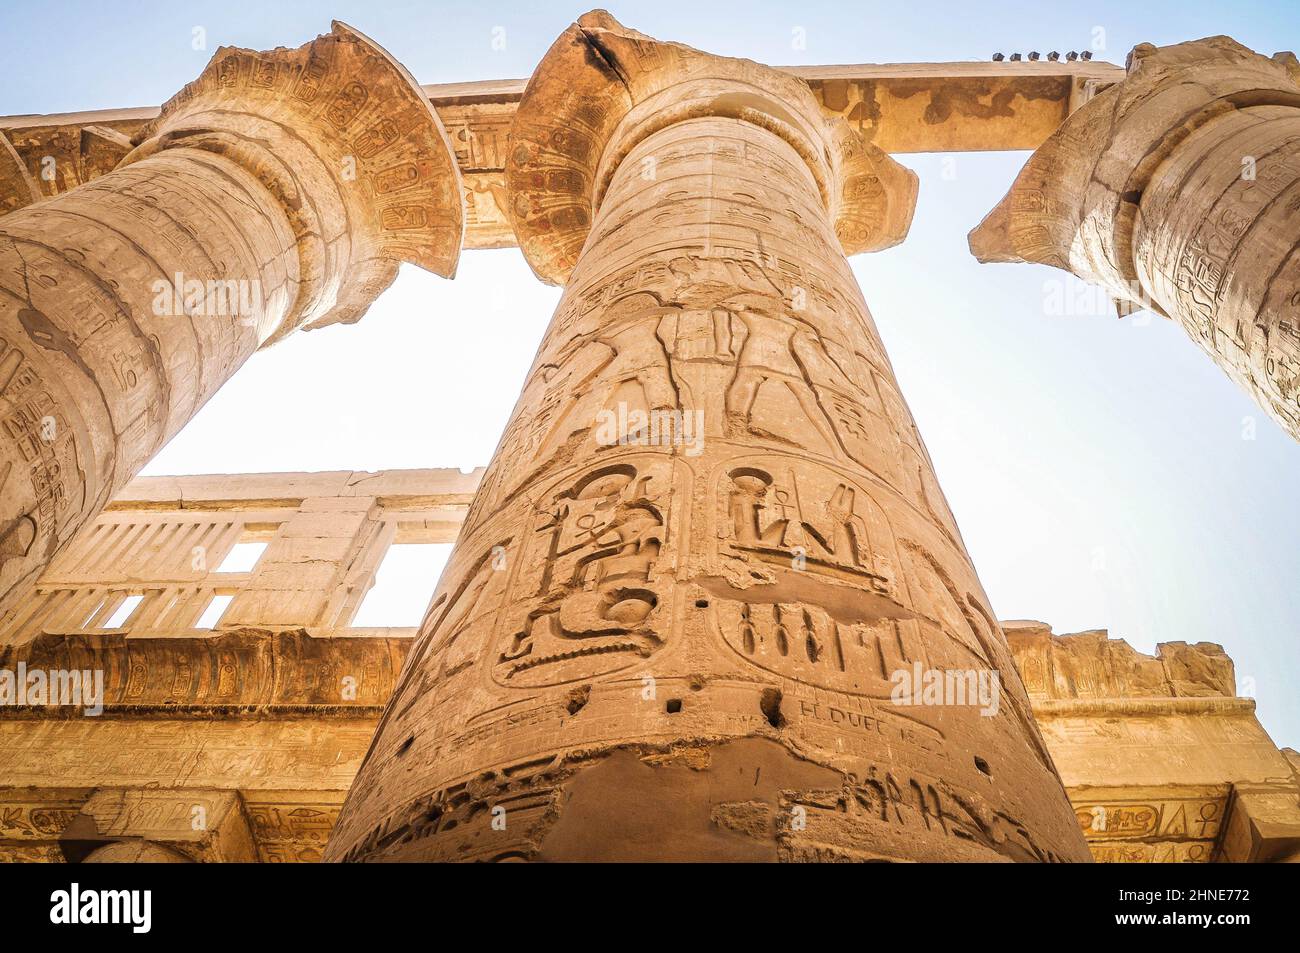 Le complexe du temple de Karnak, communément connu sous le nom de Karnak, comprend un vaste mélange de temples décadés, de pylônes, de chapelles et d'autres bâtiments près de Louxor, en Égypte. Banque D'Images